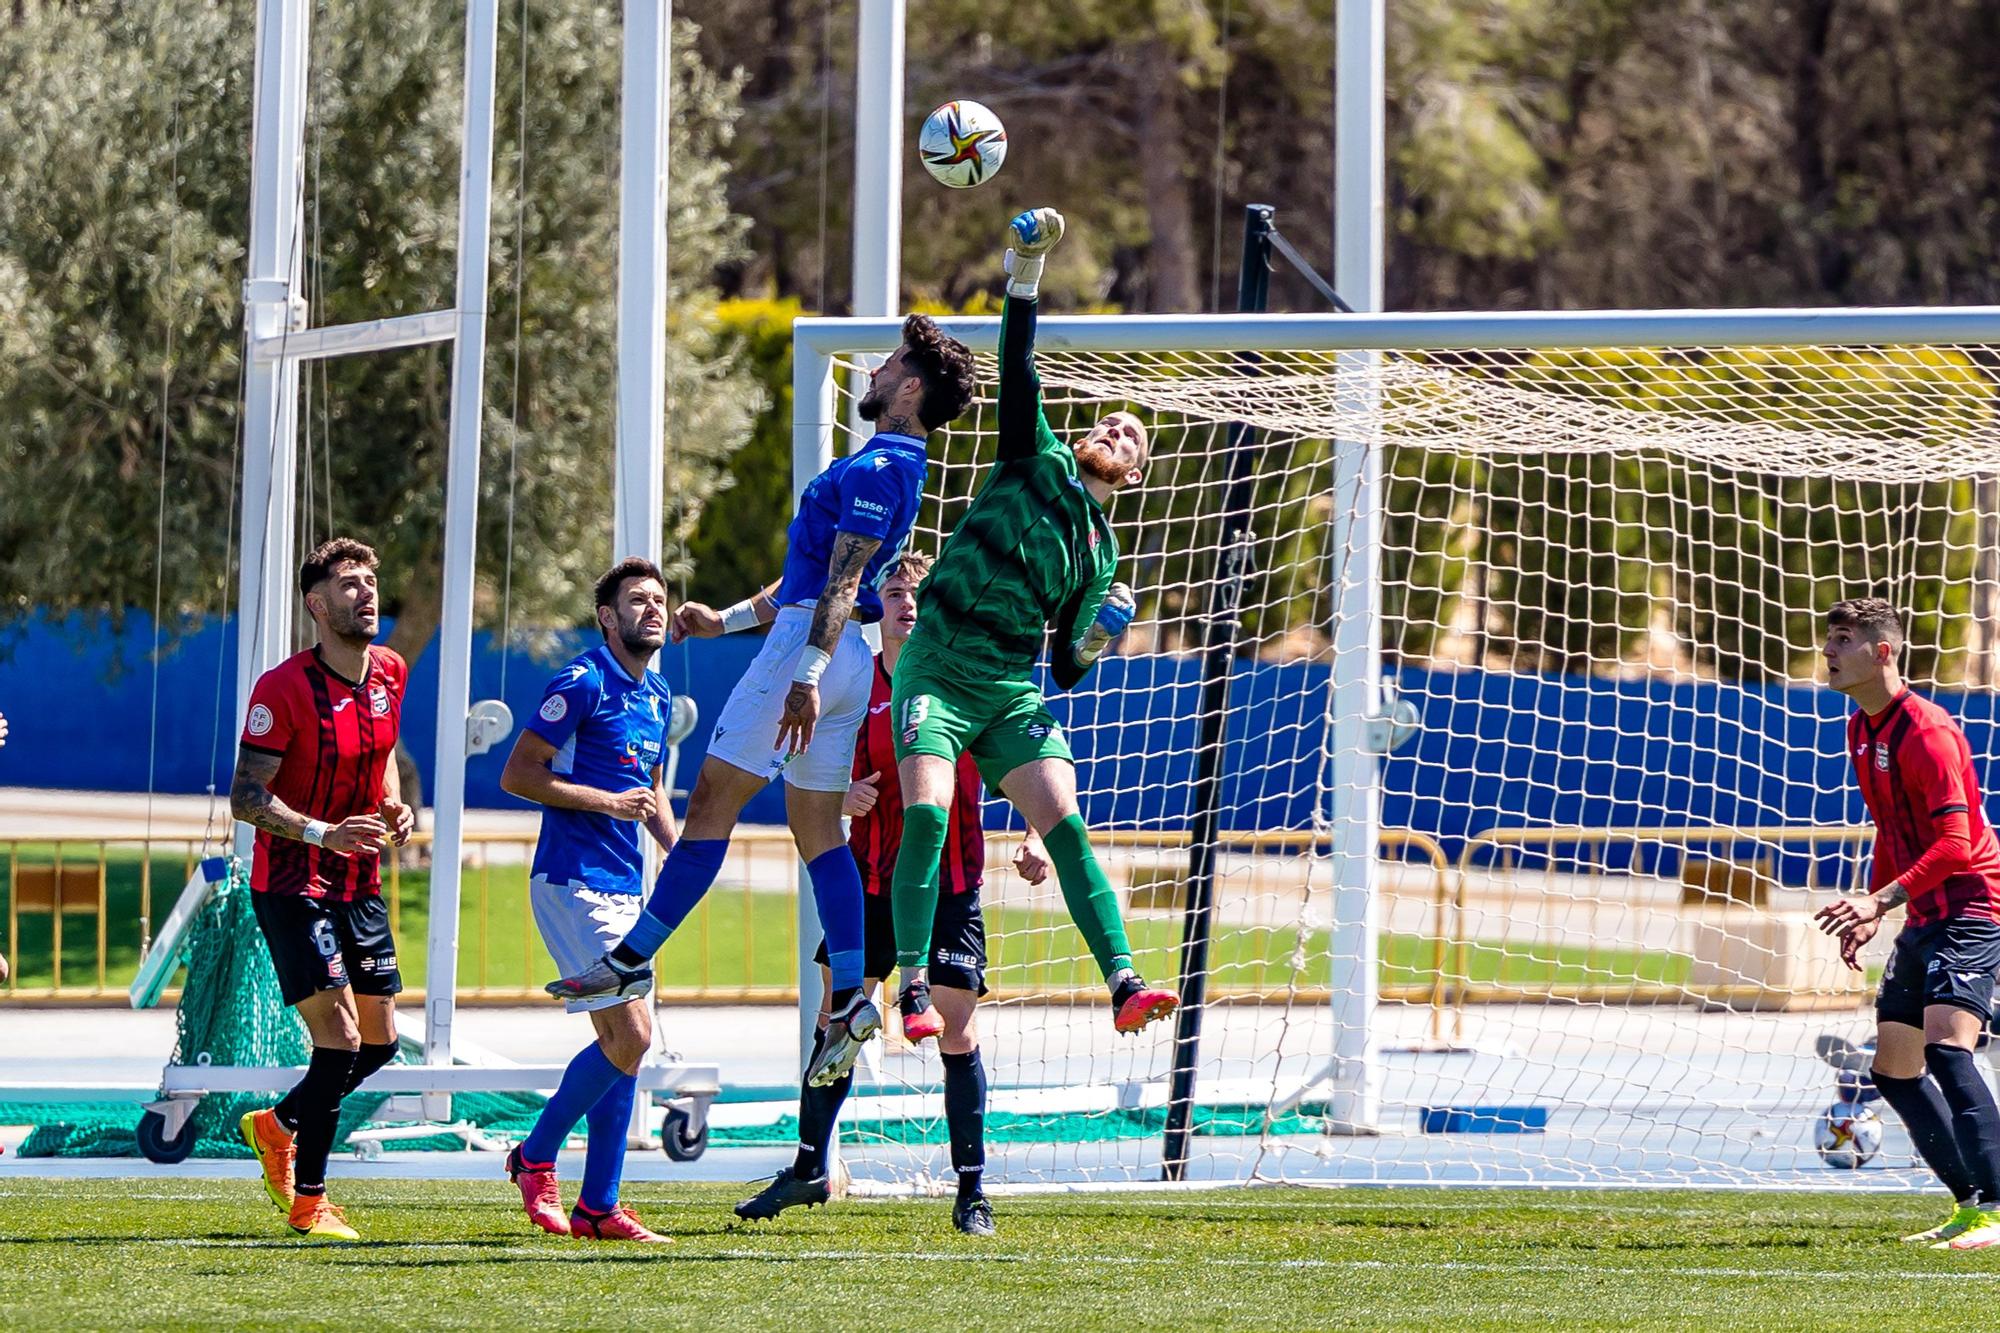 La Nucía gana por 2 - 0 al Melilla este domingo y se mantiene líder en la clasificación.